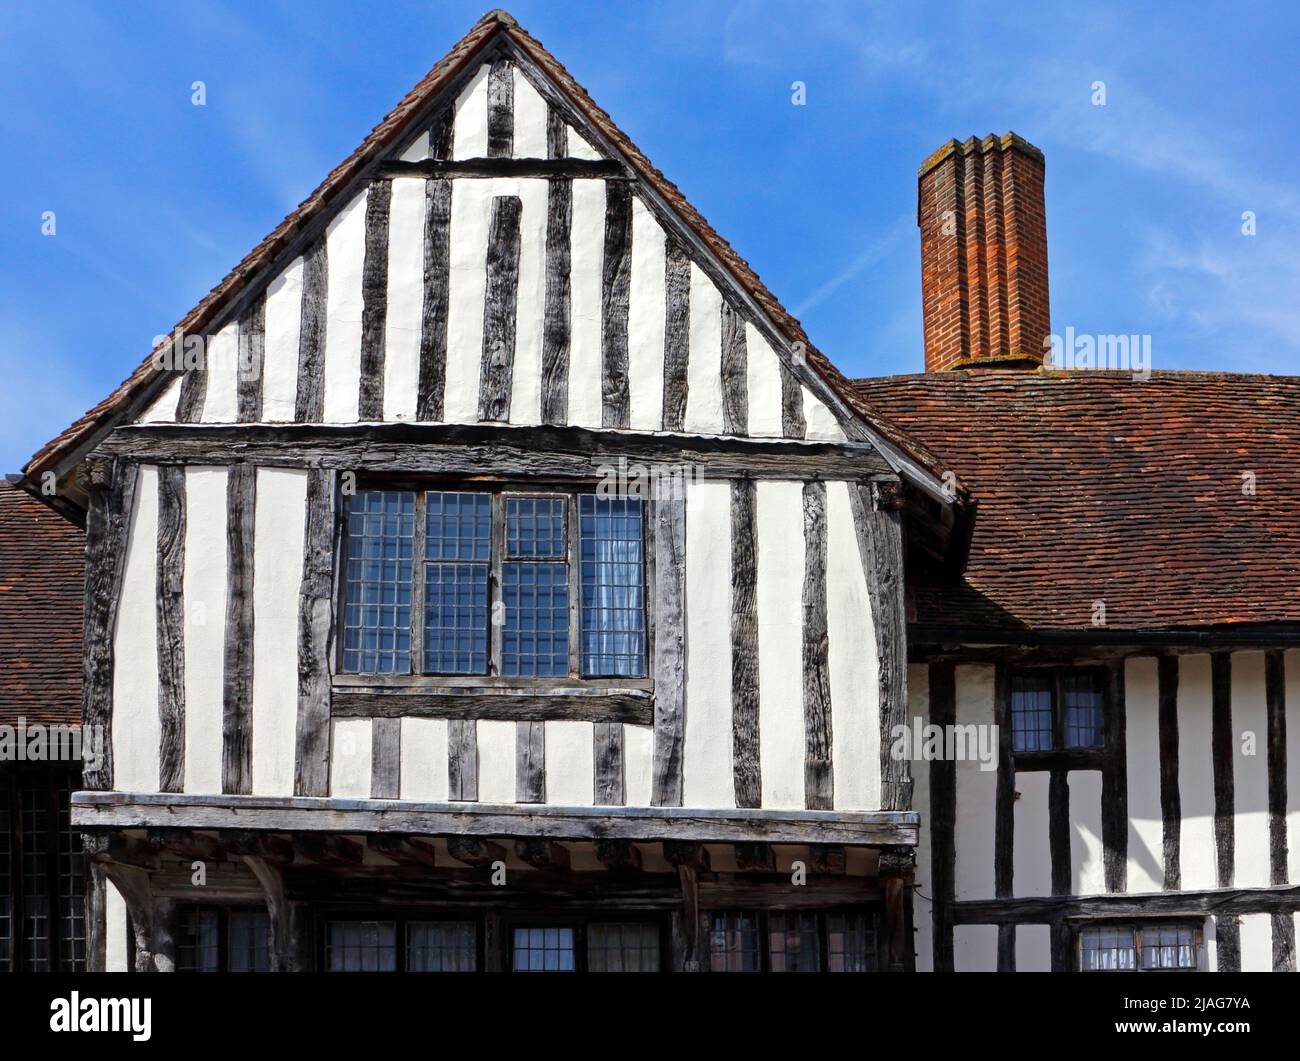 Detalle arquitectónico del pórtico de la Guildhall del Guild of Corpus Christi, del siglo 16th, en Lavenham, Suffolk, Inglaterra, Reino Unido. Foto de stock